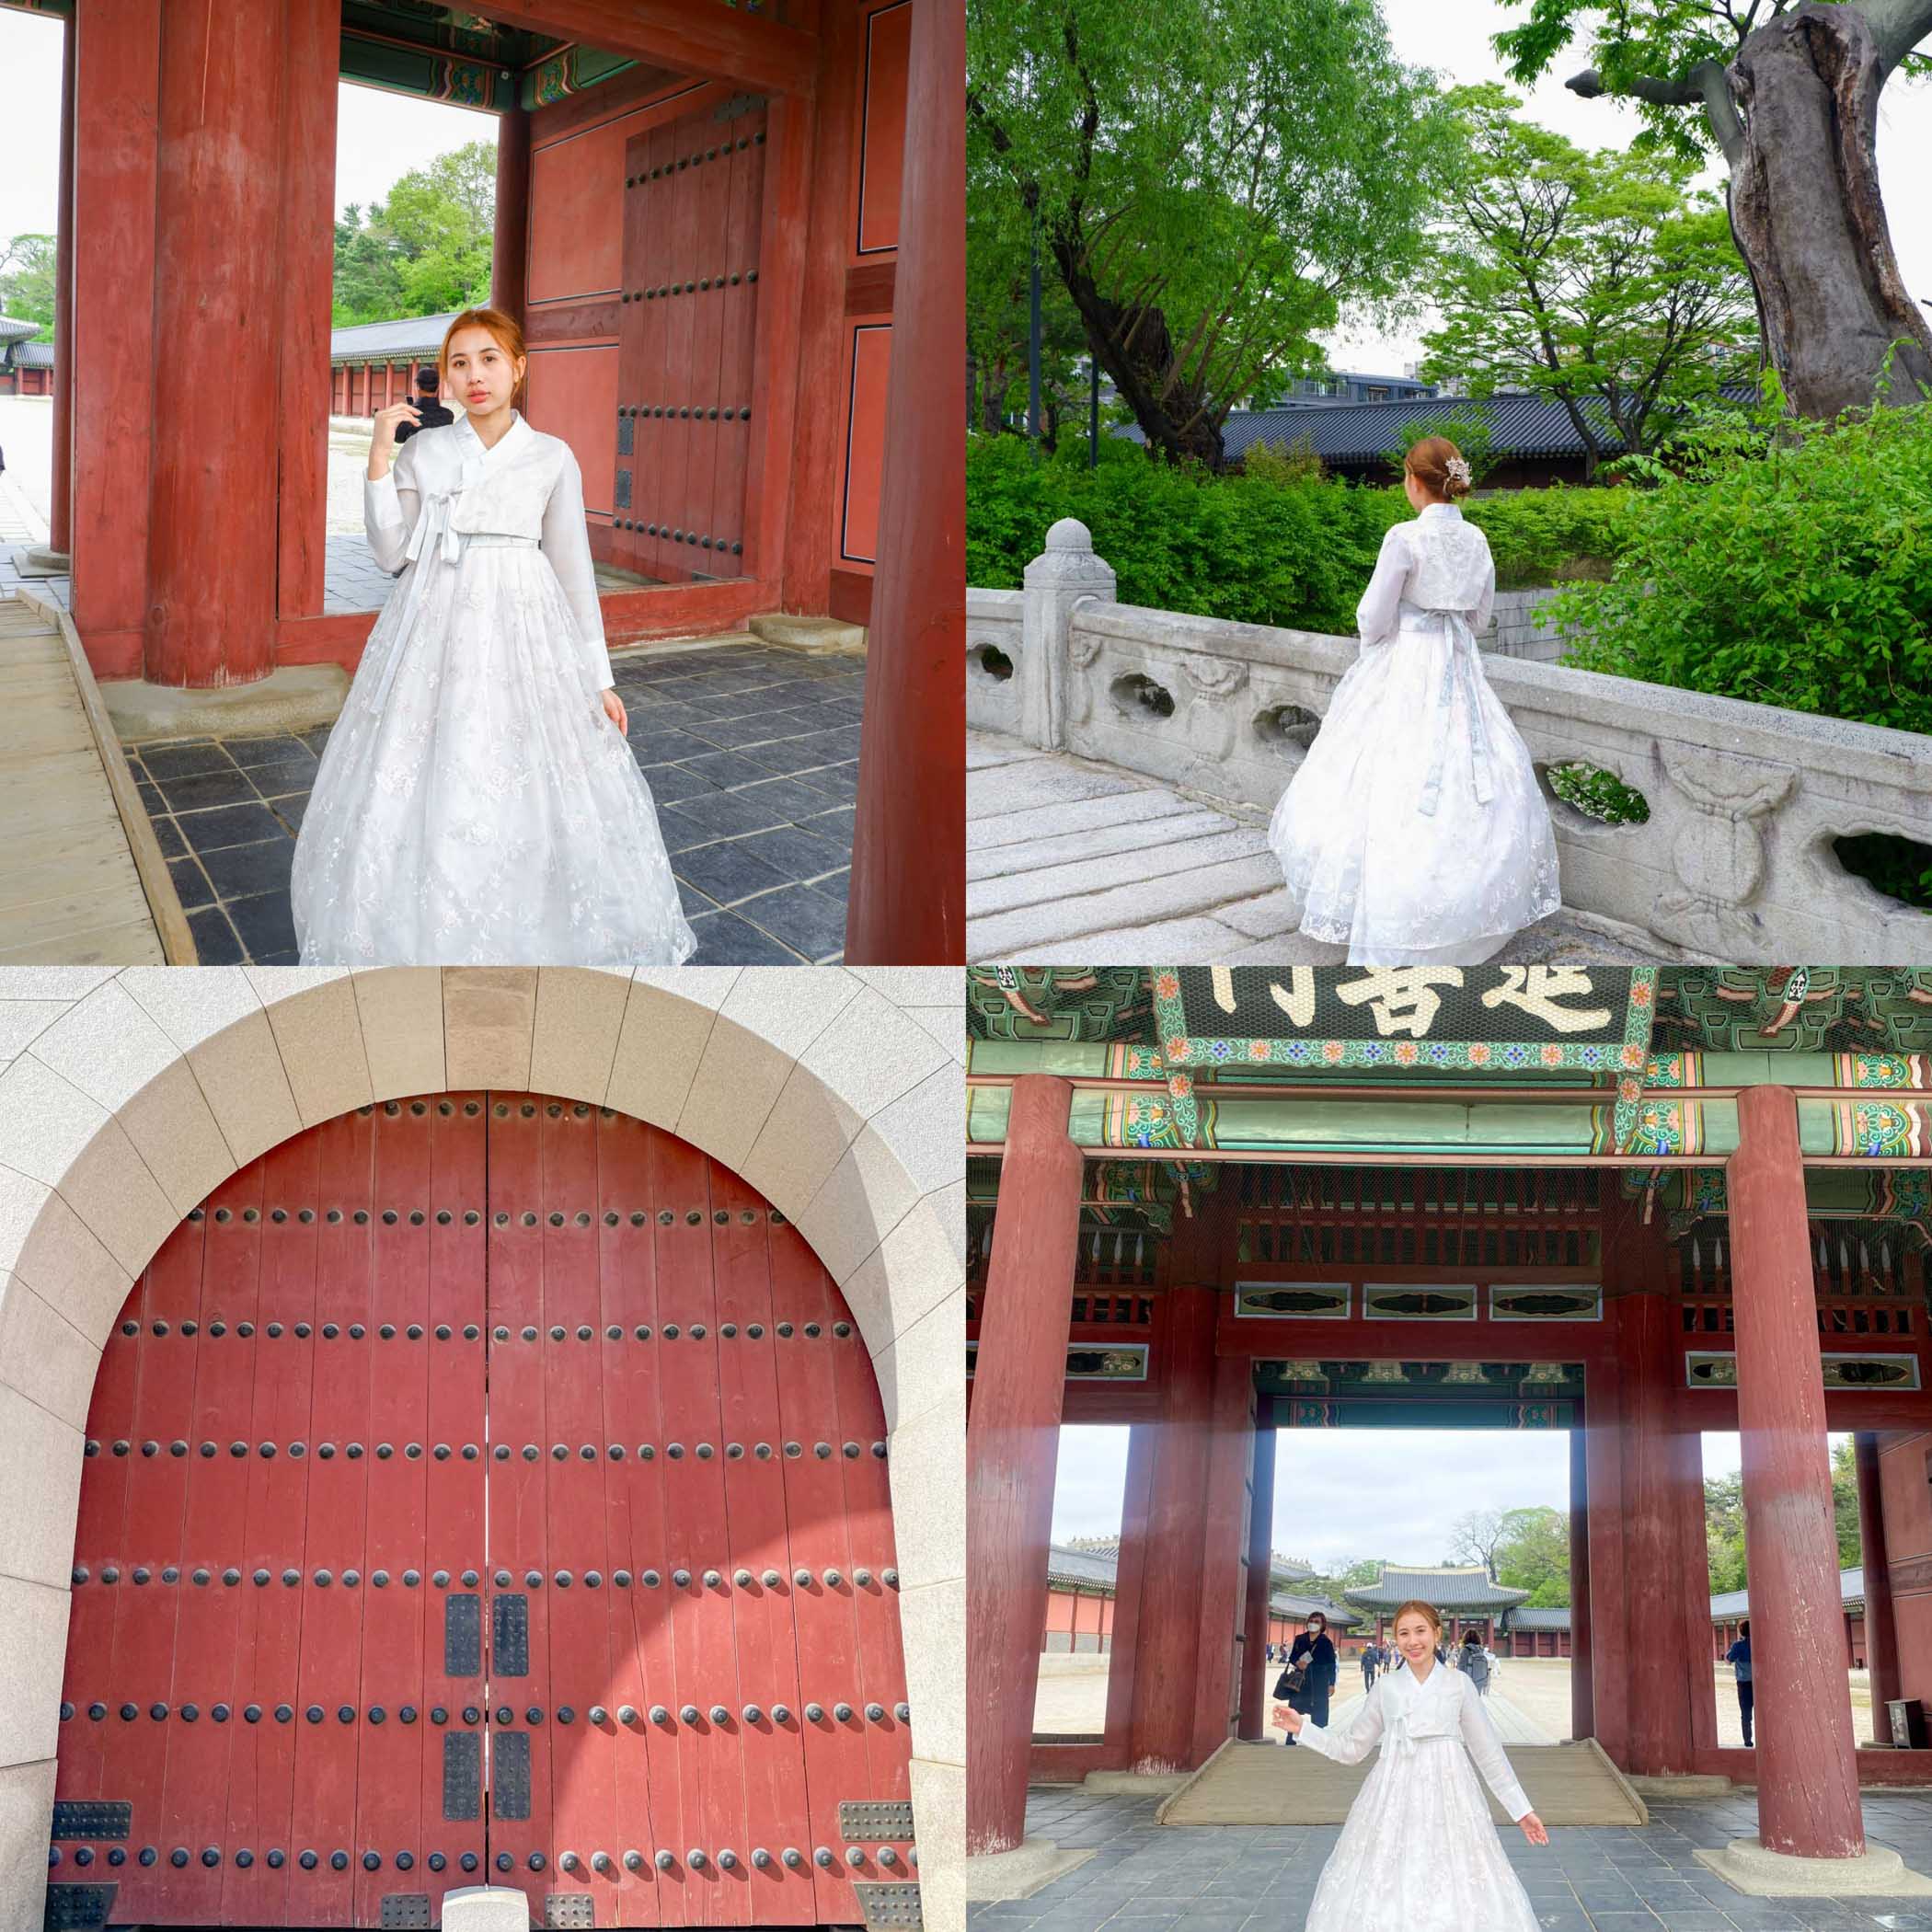 พระราชวังคยองบกกุง Gyeongbokgung Palace และ พระราชวังชางด็อกกุง Changdeokgung Palace